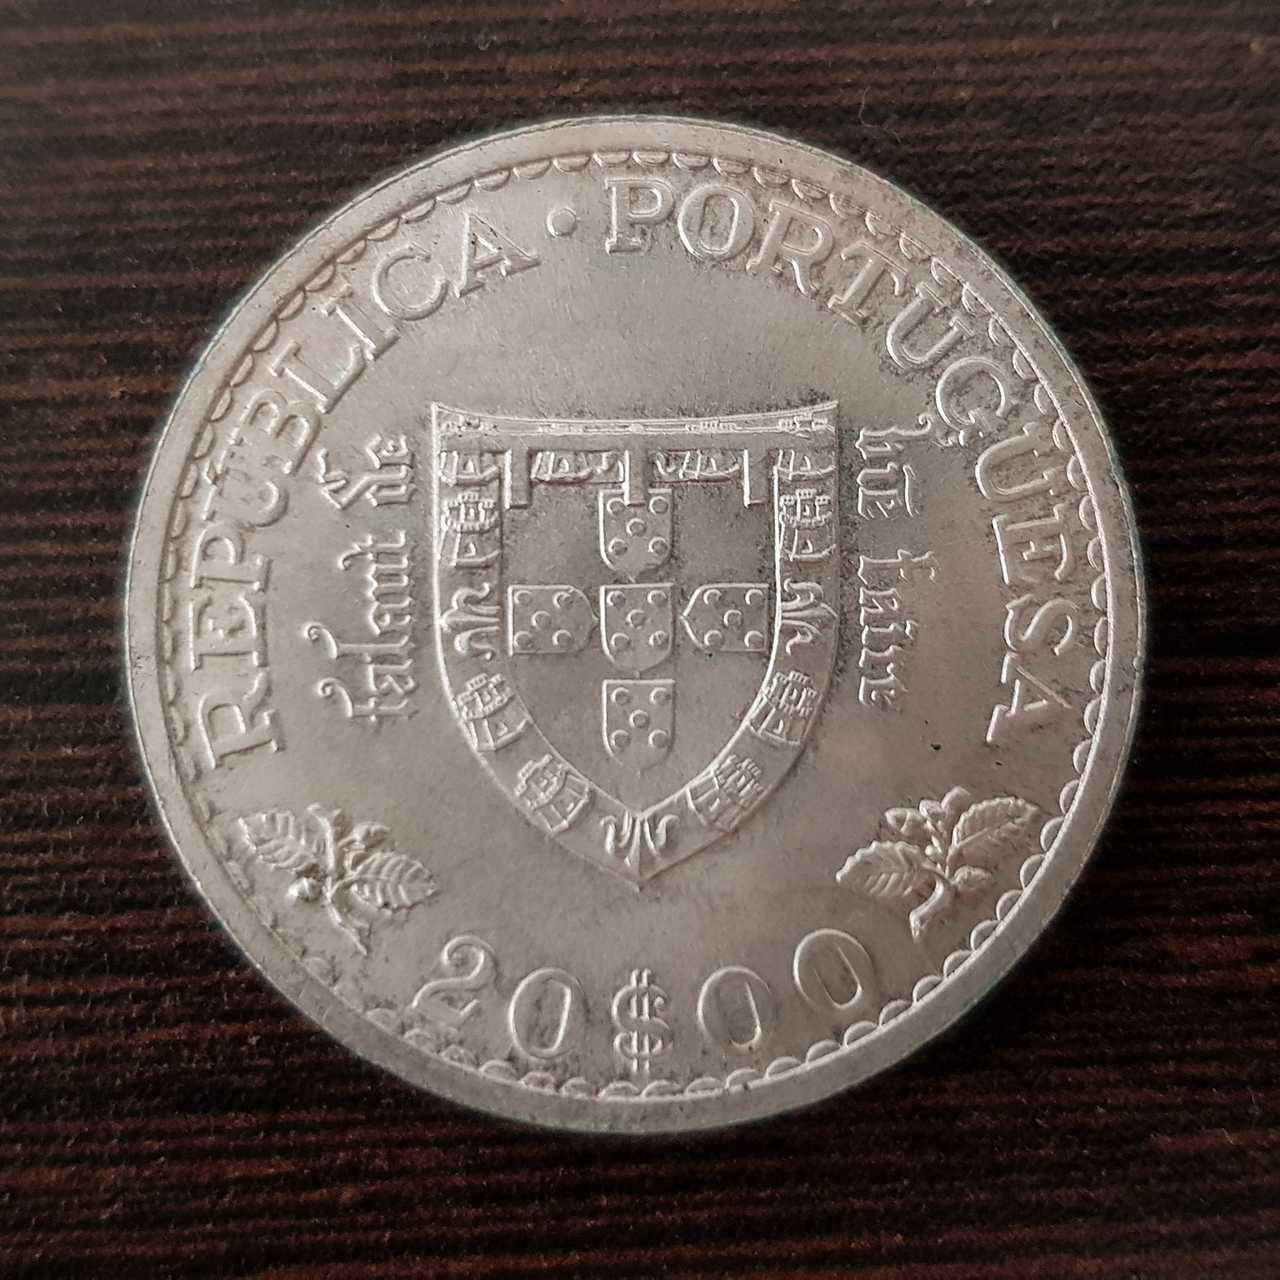 Escudos portugueses em prata (10 e 20$00)